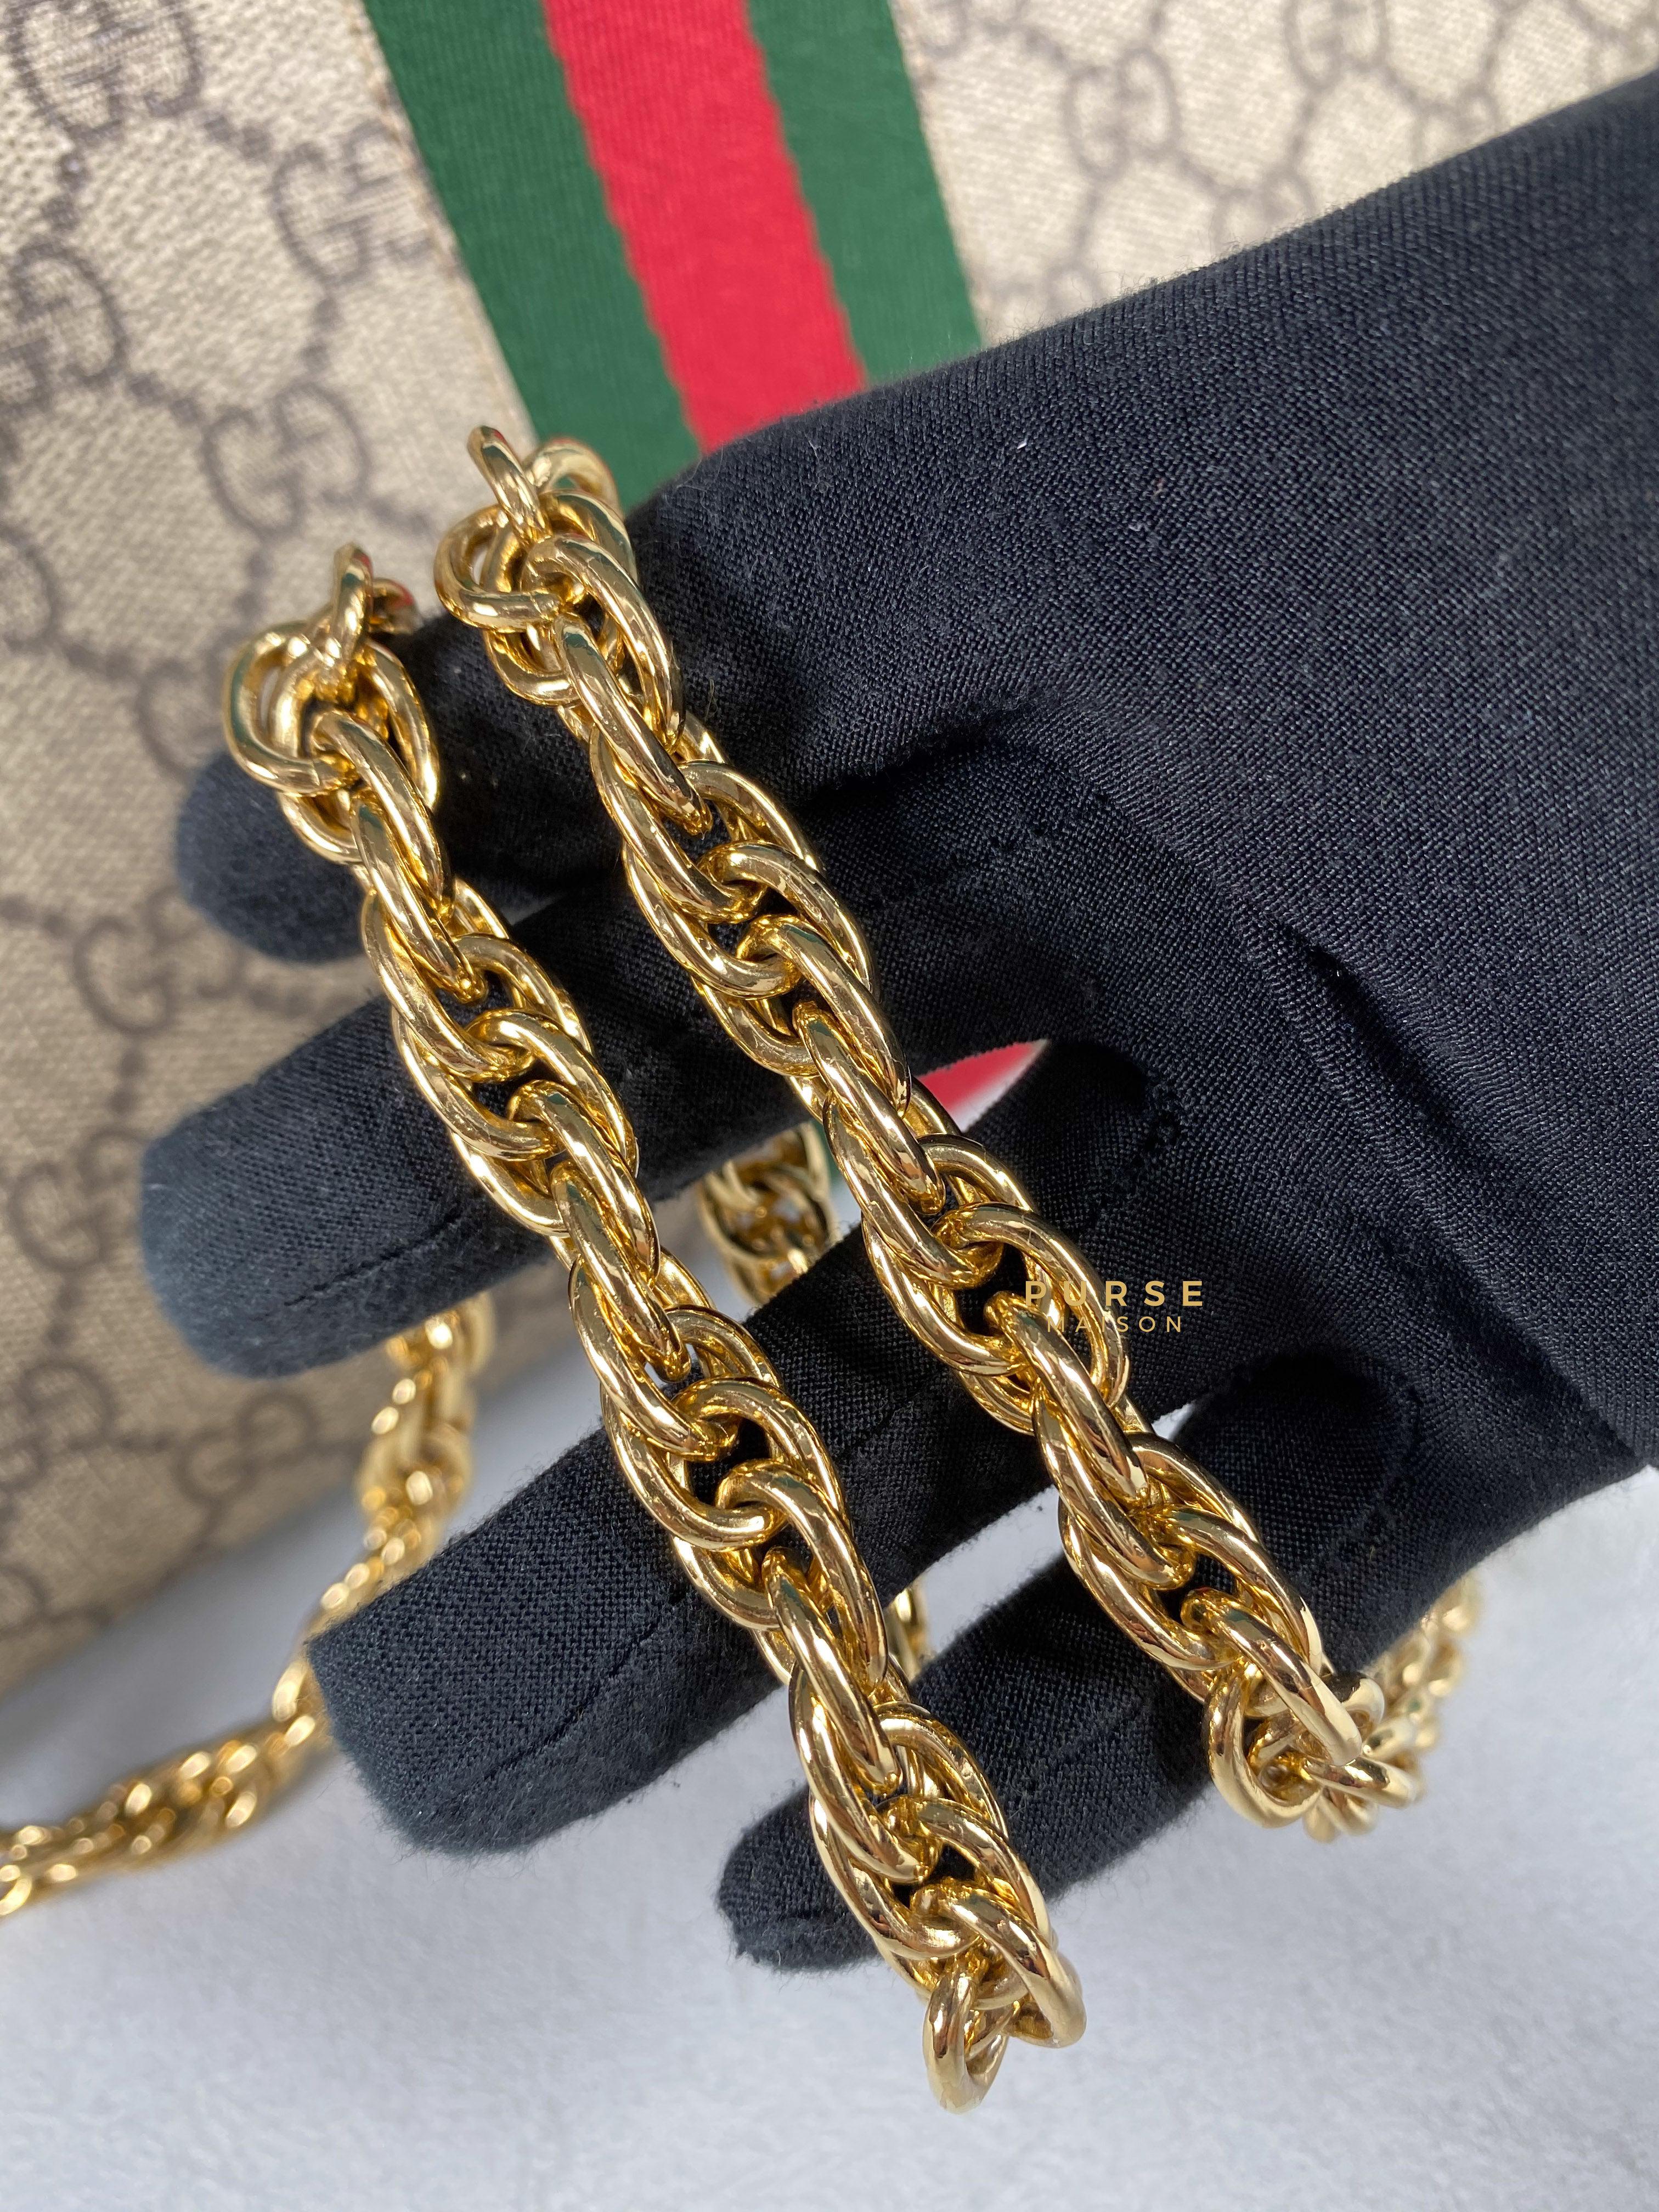 Gucci GG Supreme Monogram Web Ophidia Chain Shoulder Bag | Purse Maison Luxury Bags Shop